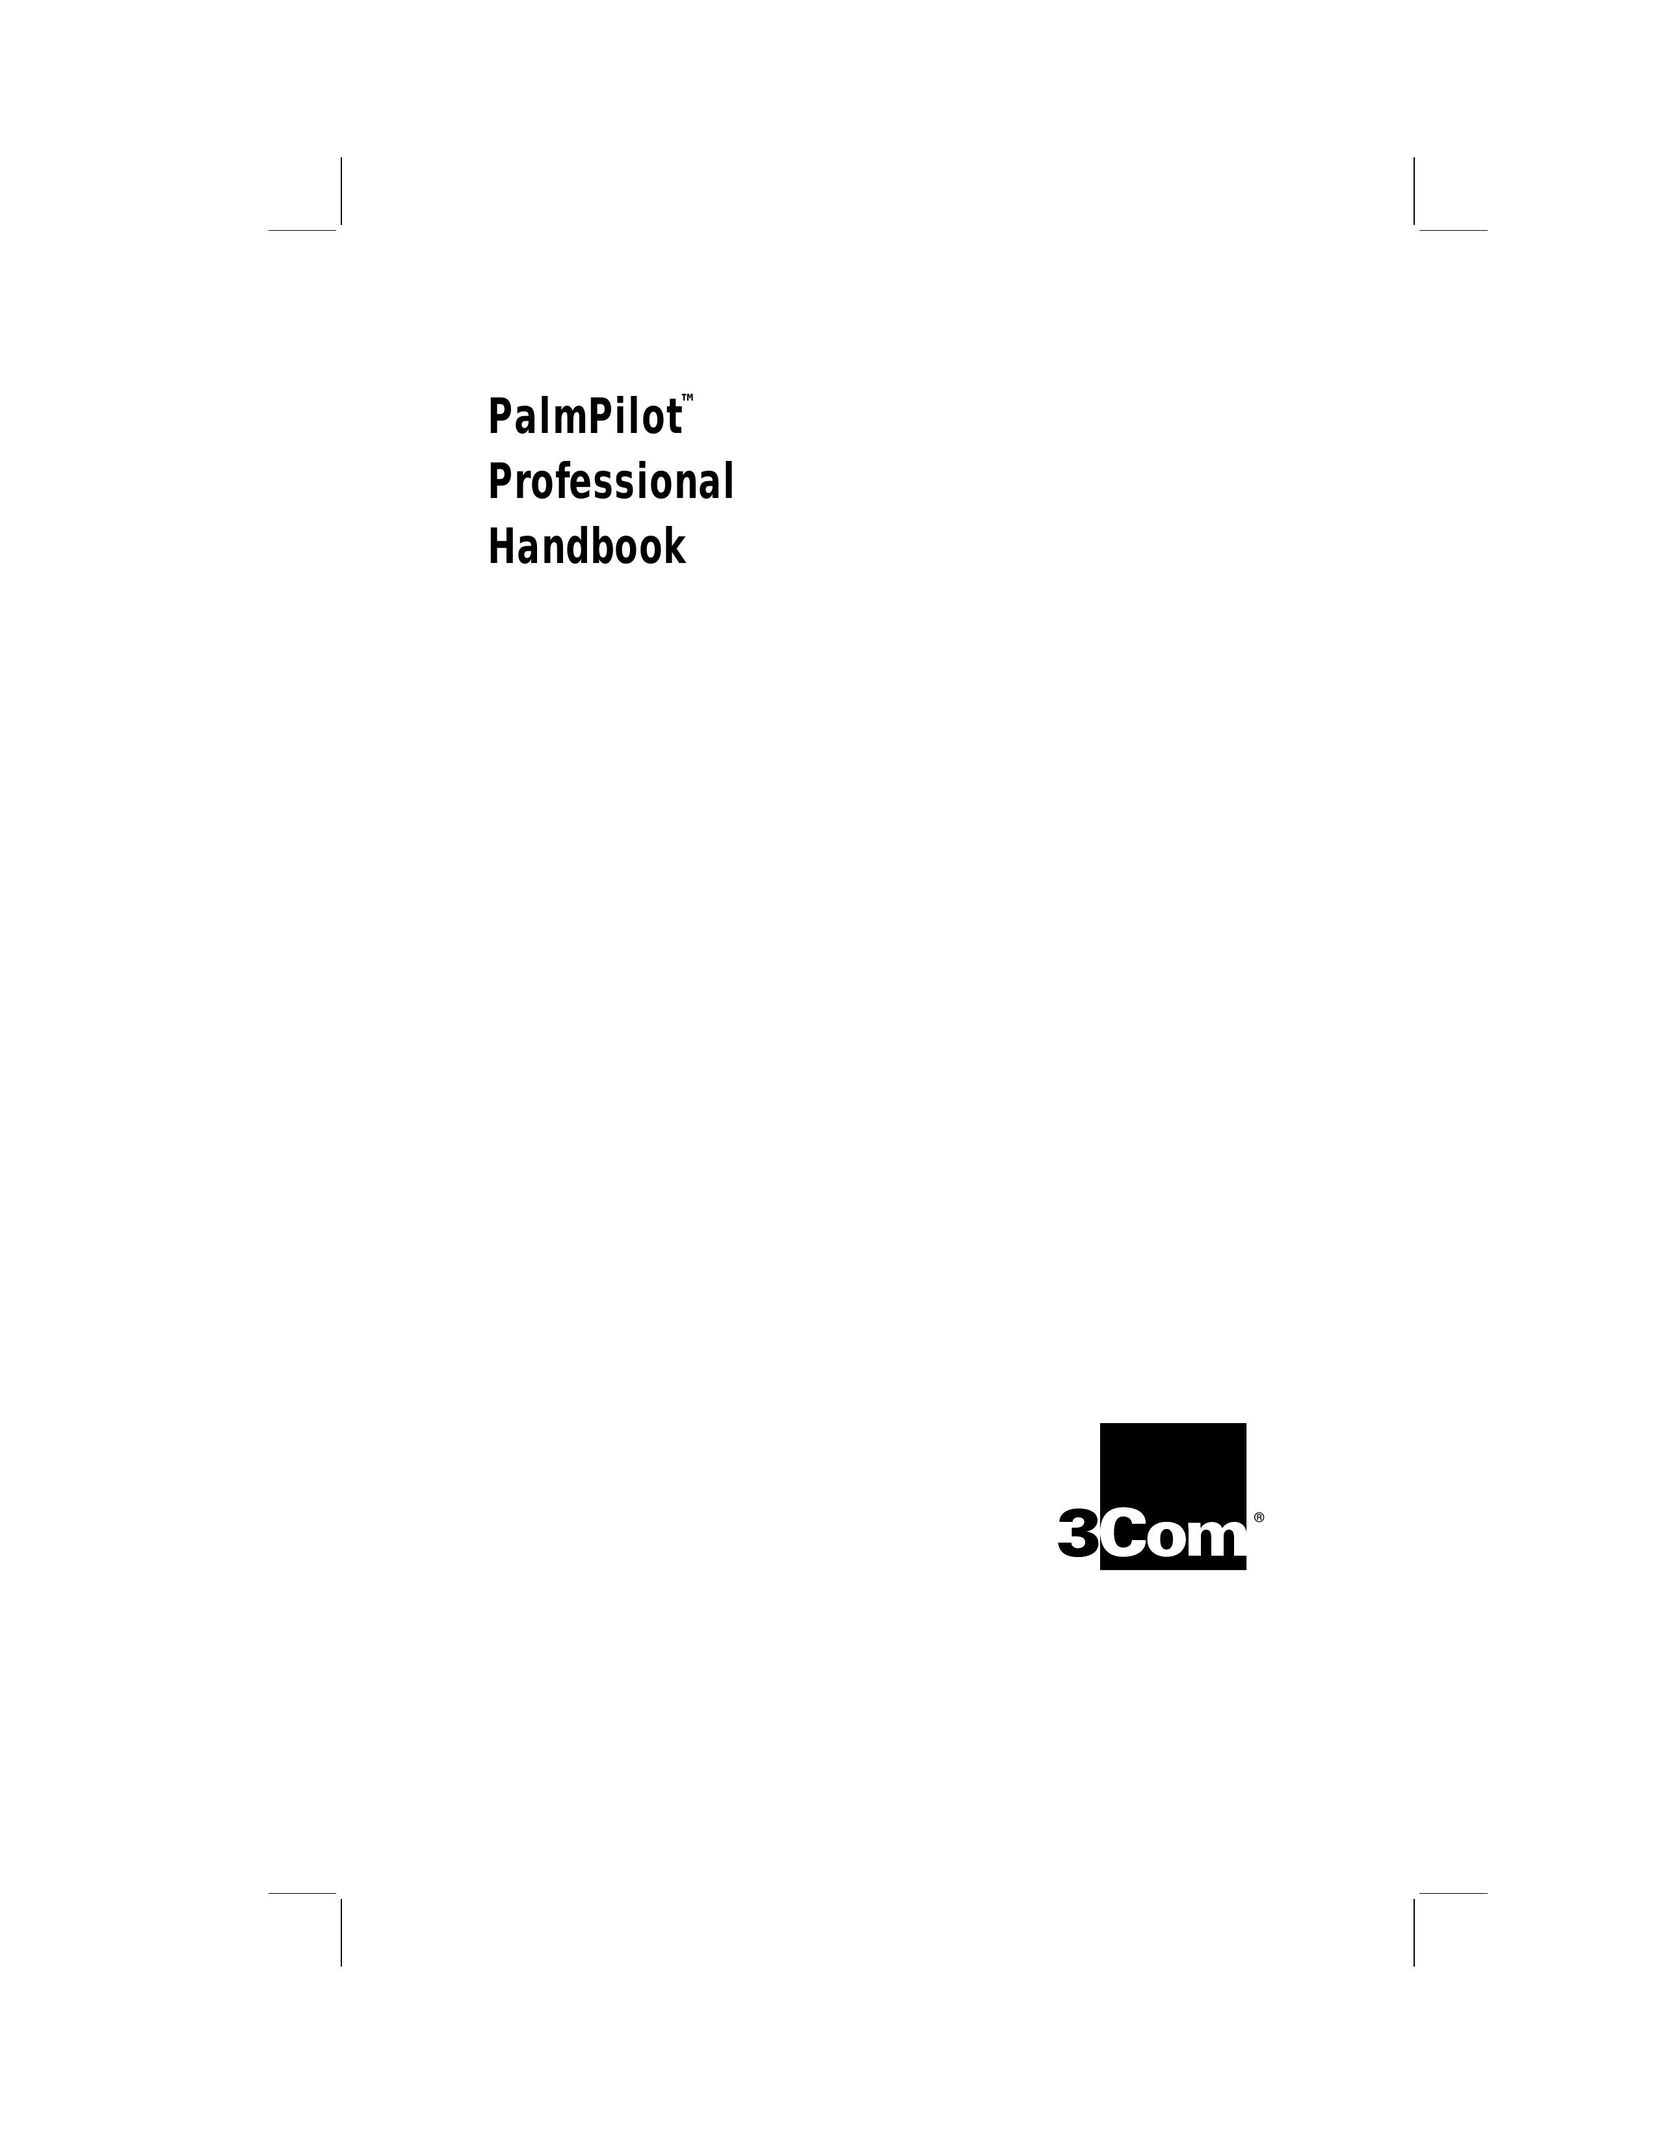 3Com PalmPilot PDAs & Smartphones User Manual